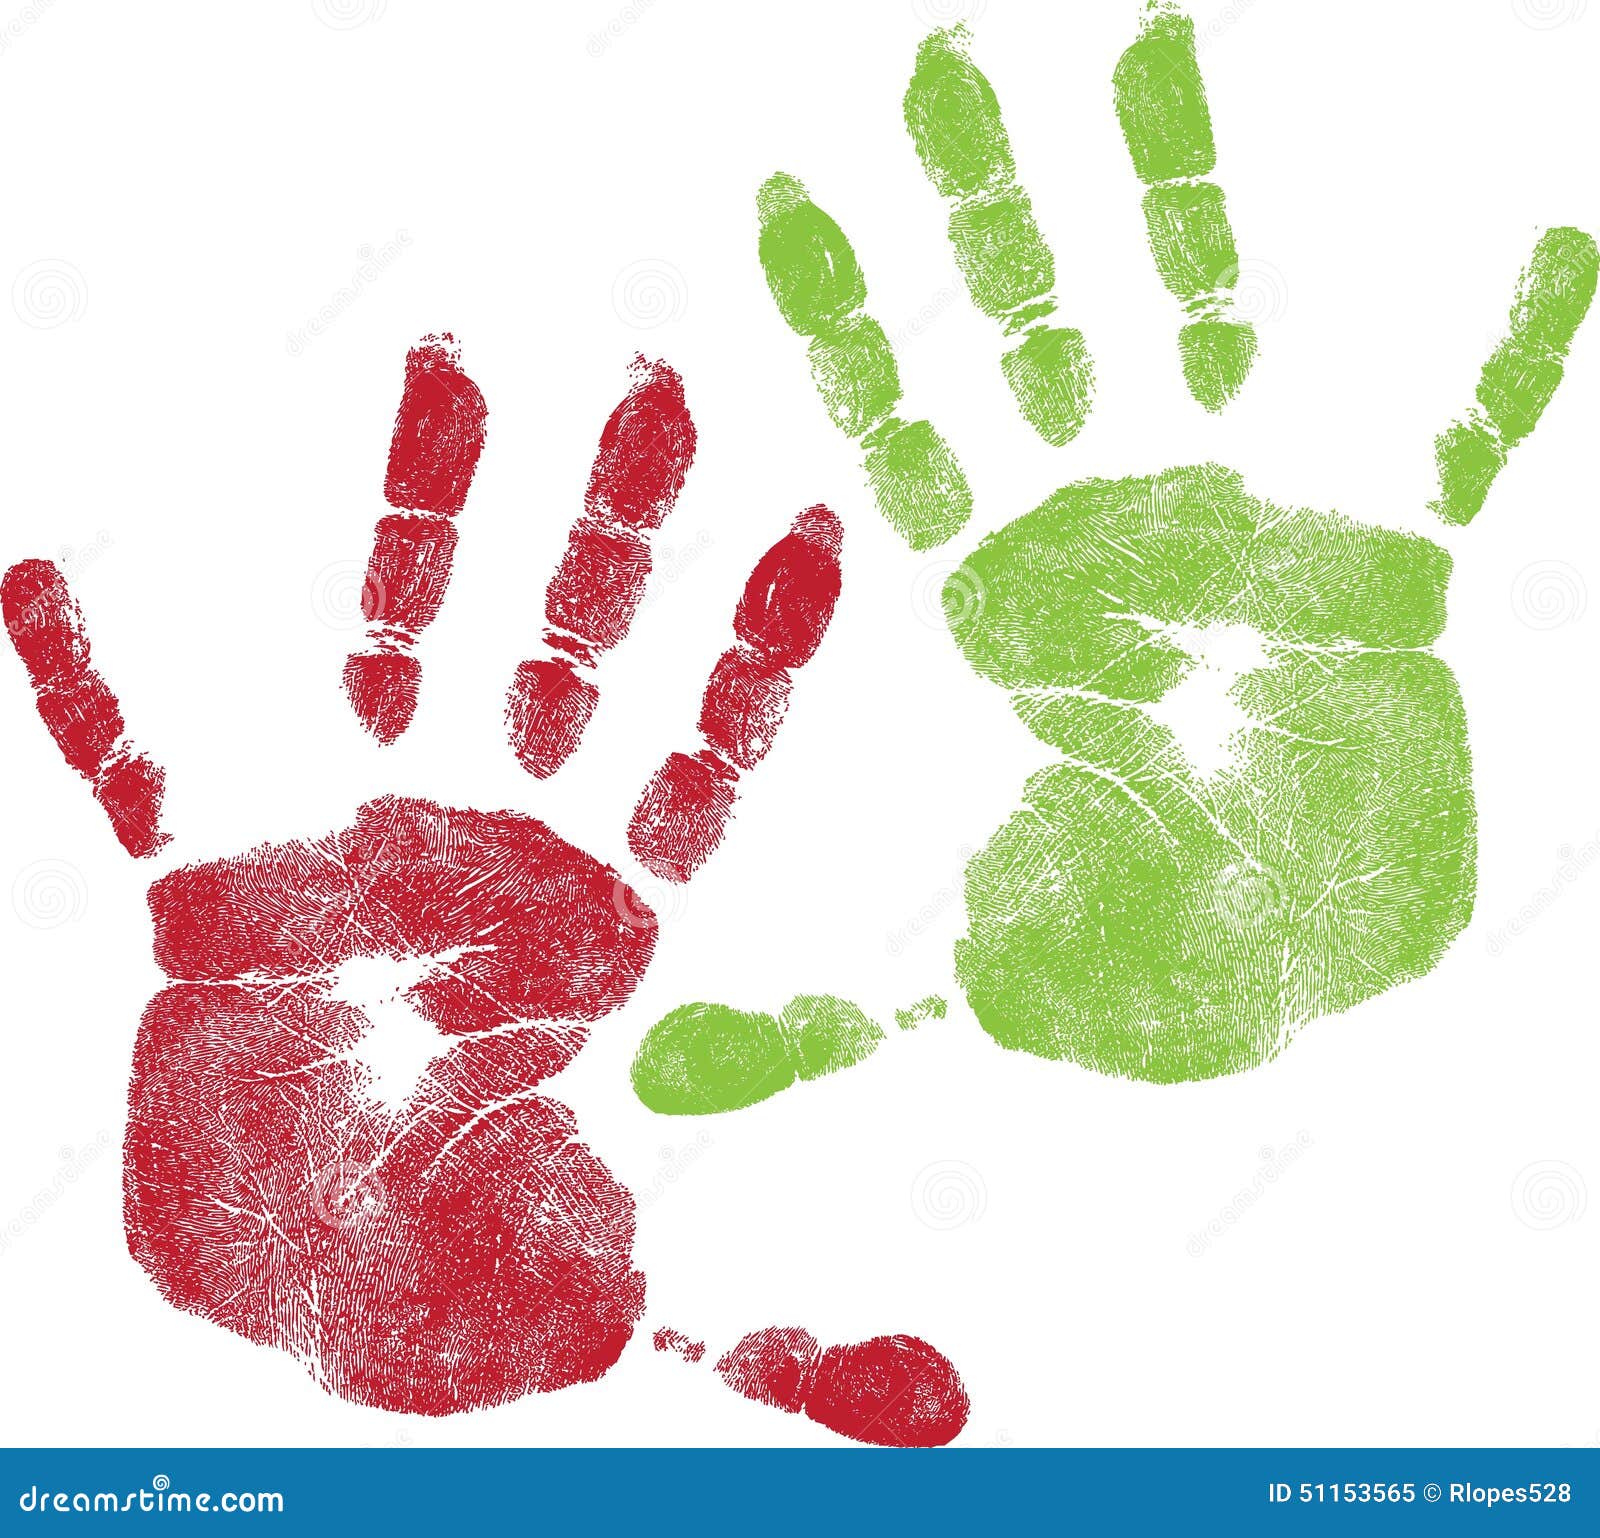 Le mani dei bambini colorati Fotografia Stock Libera da Diritti